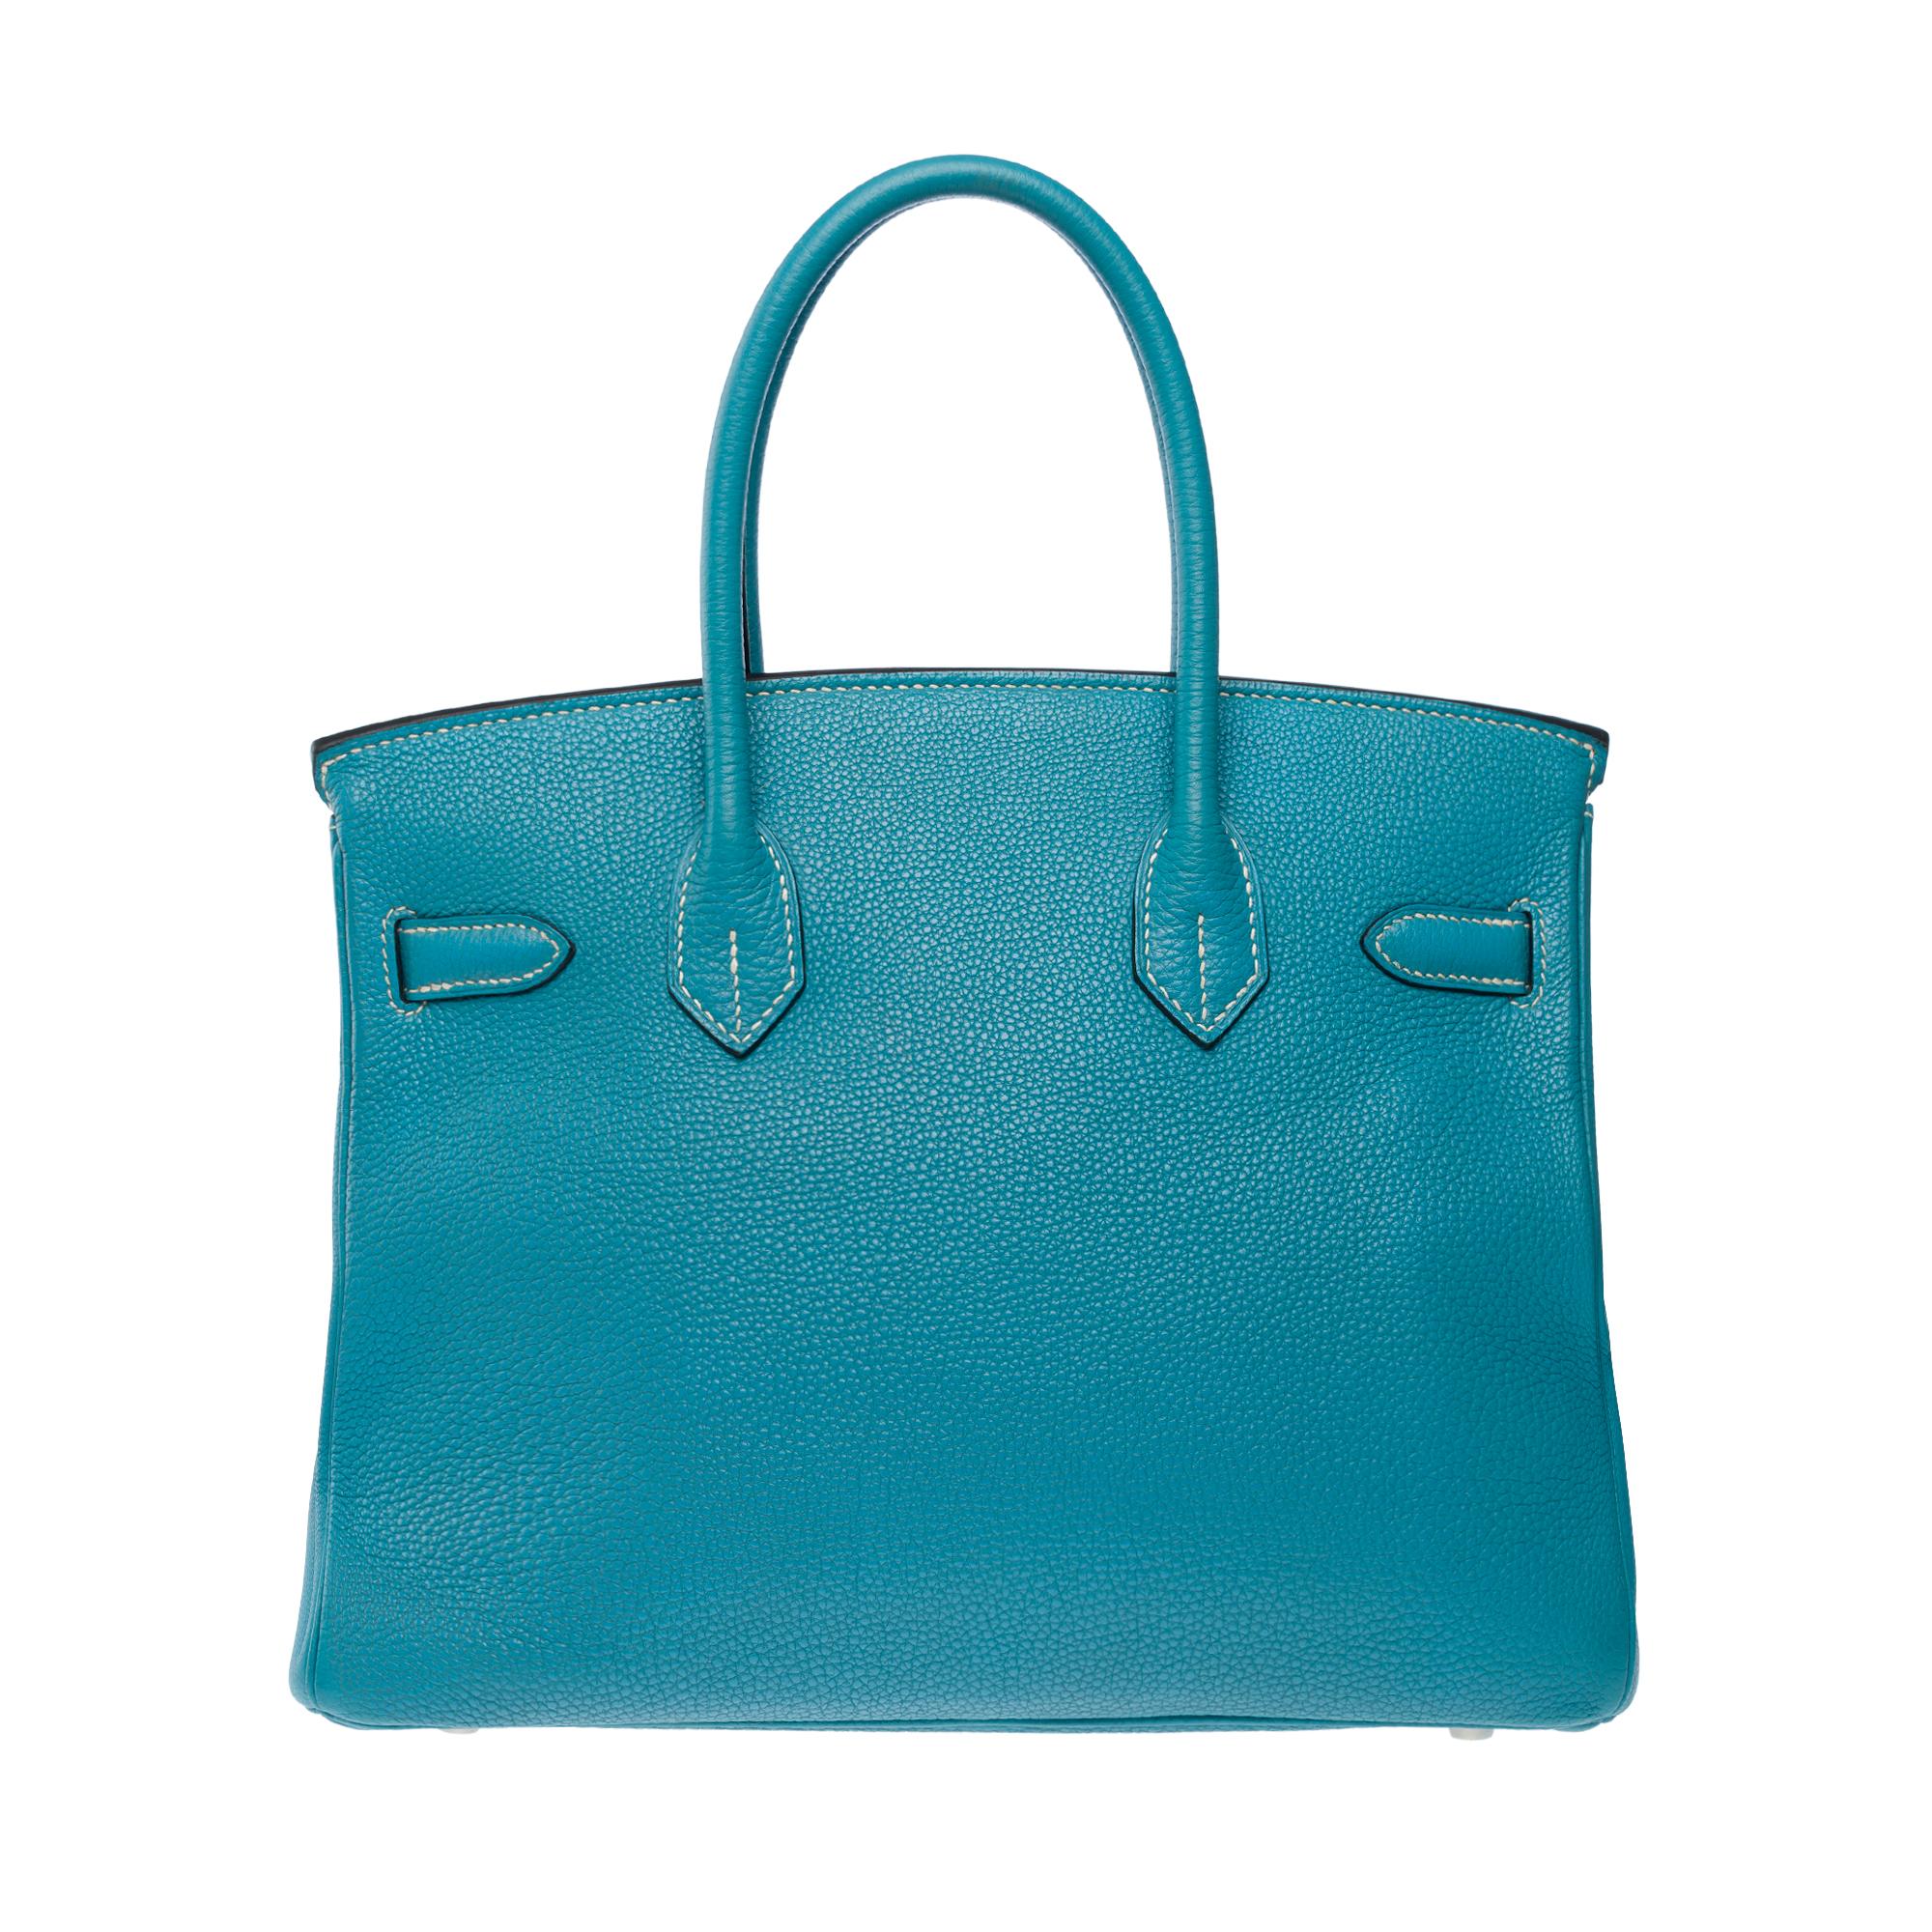 Women's Splendid Hermes Birkin 30 handbag in Blue Jean Togo leather, SHW For Sale